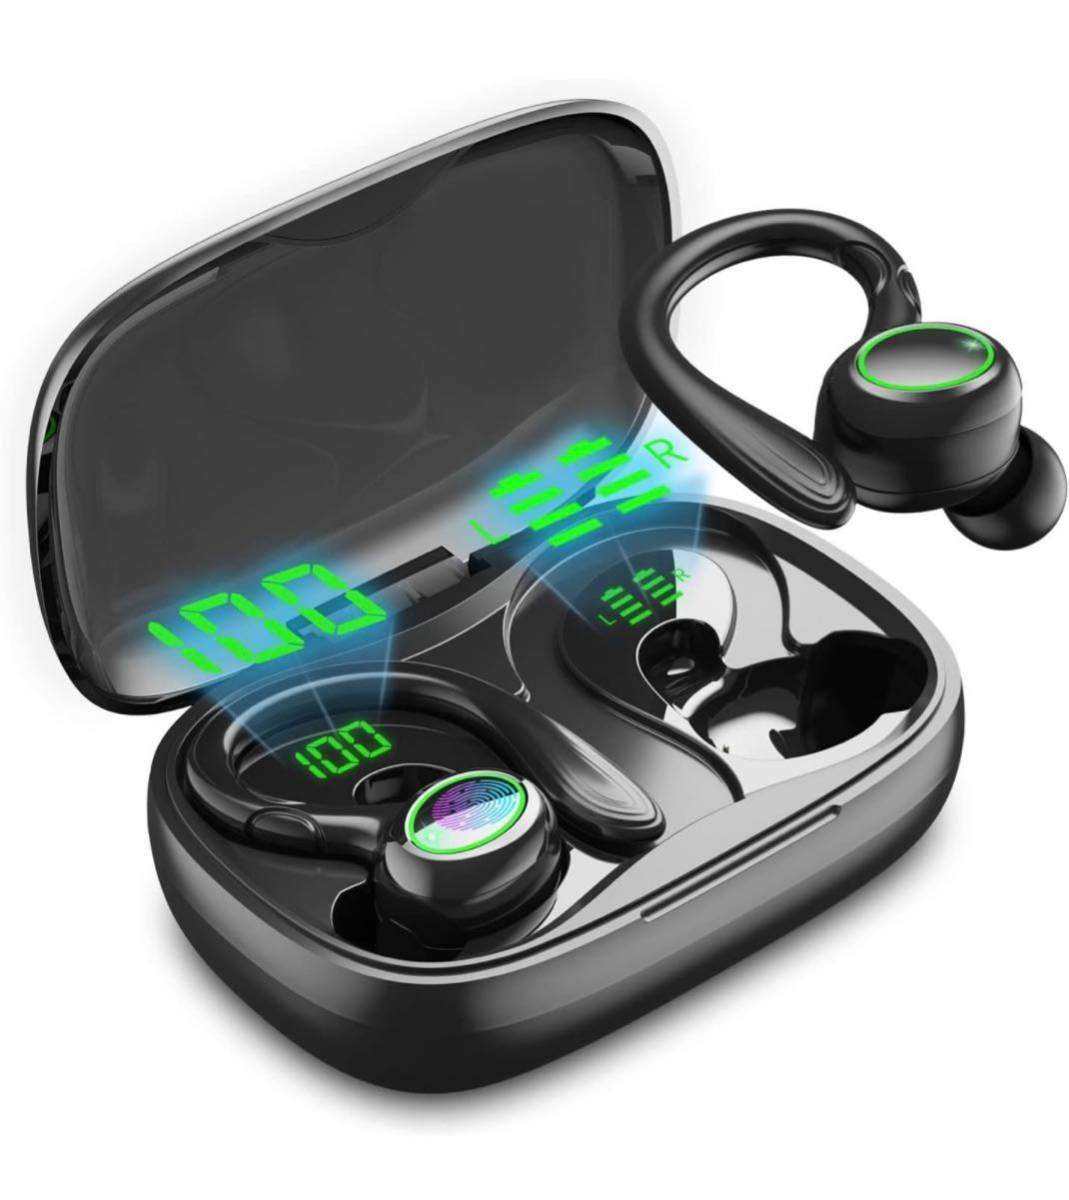  new goods unused ear .. type earphone Bluetooth earphone wireless earphone 